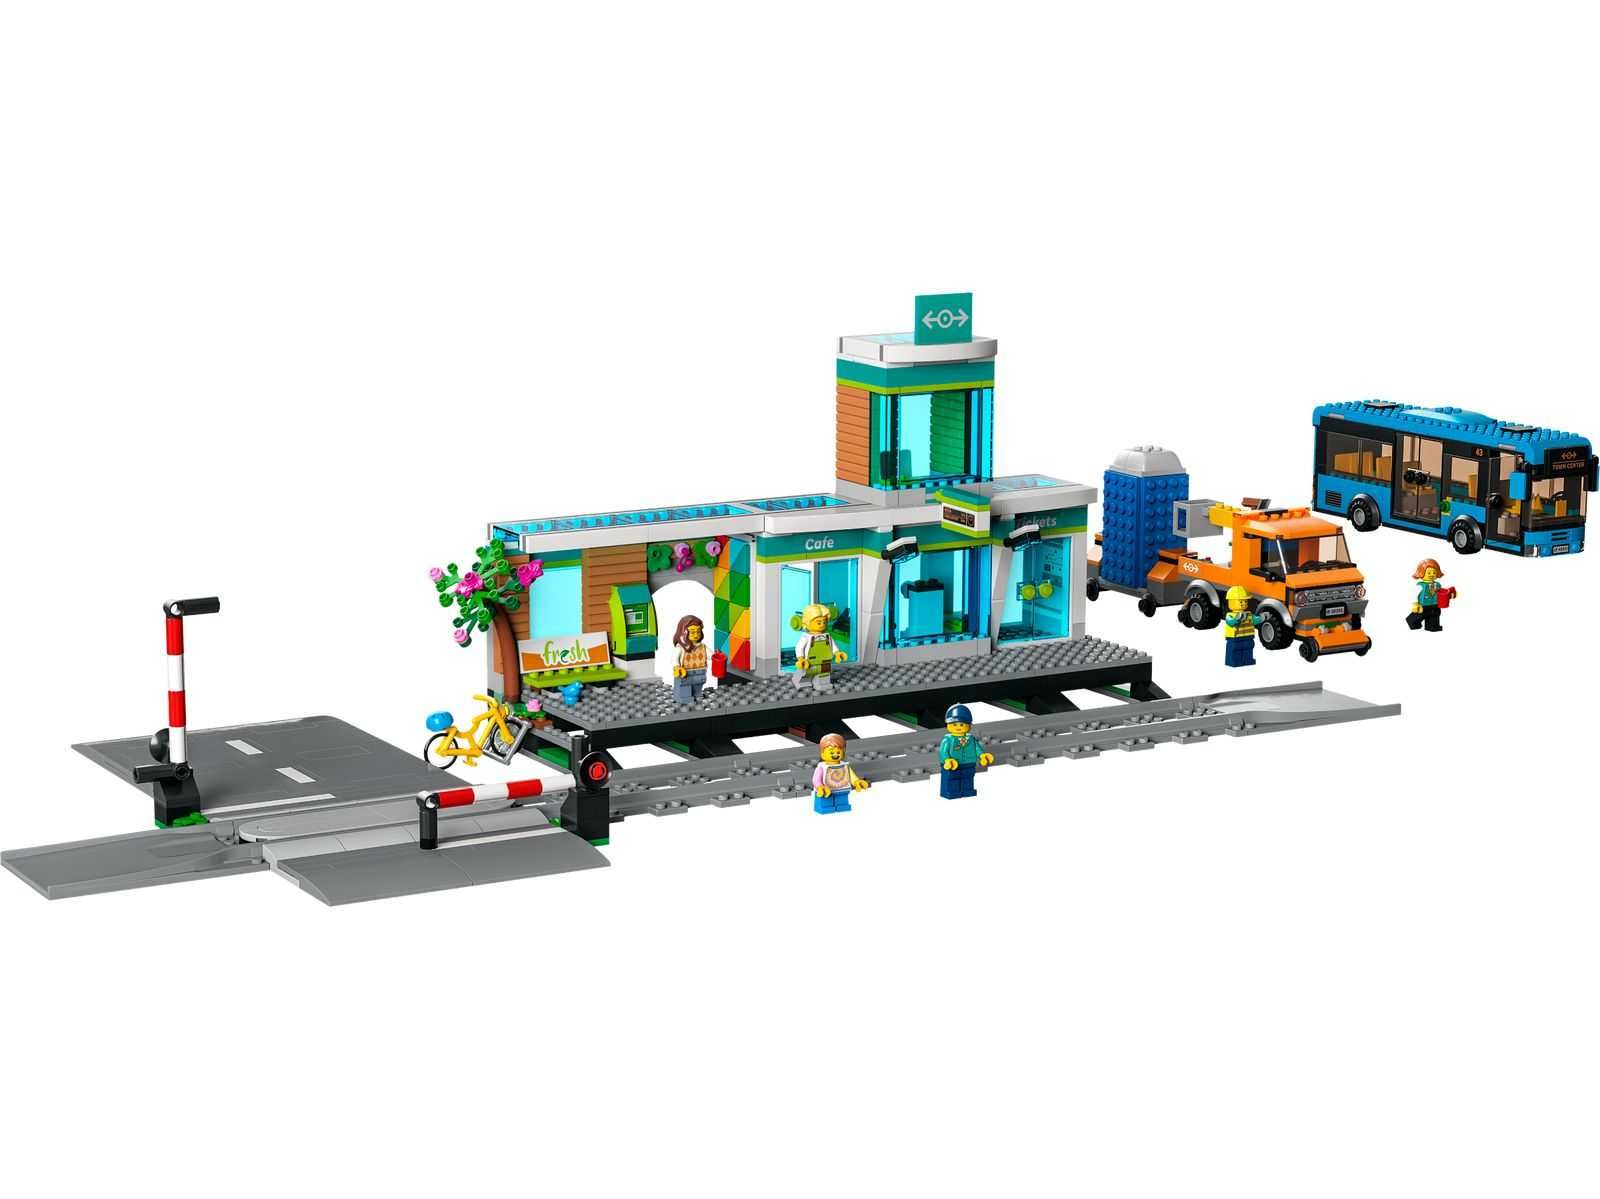 LEGO® 60335 City - Dworzec kolejowy